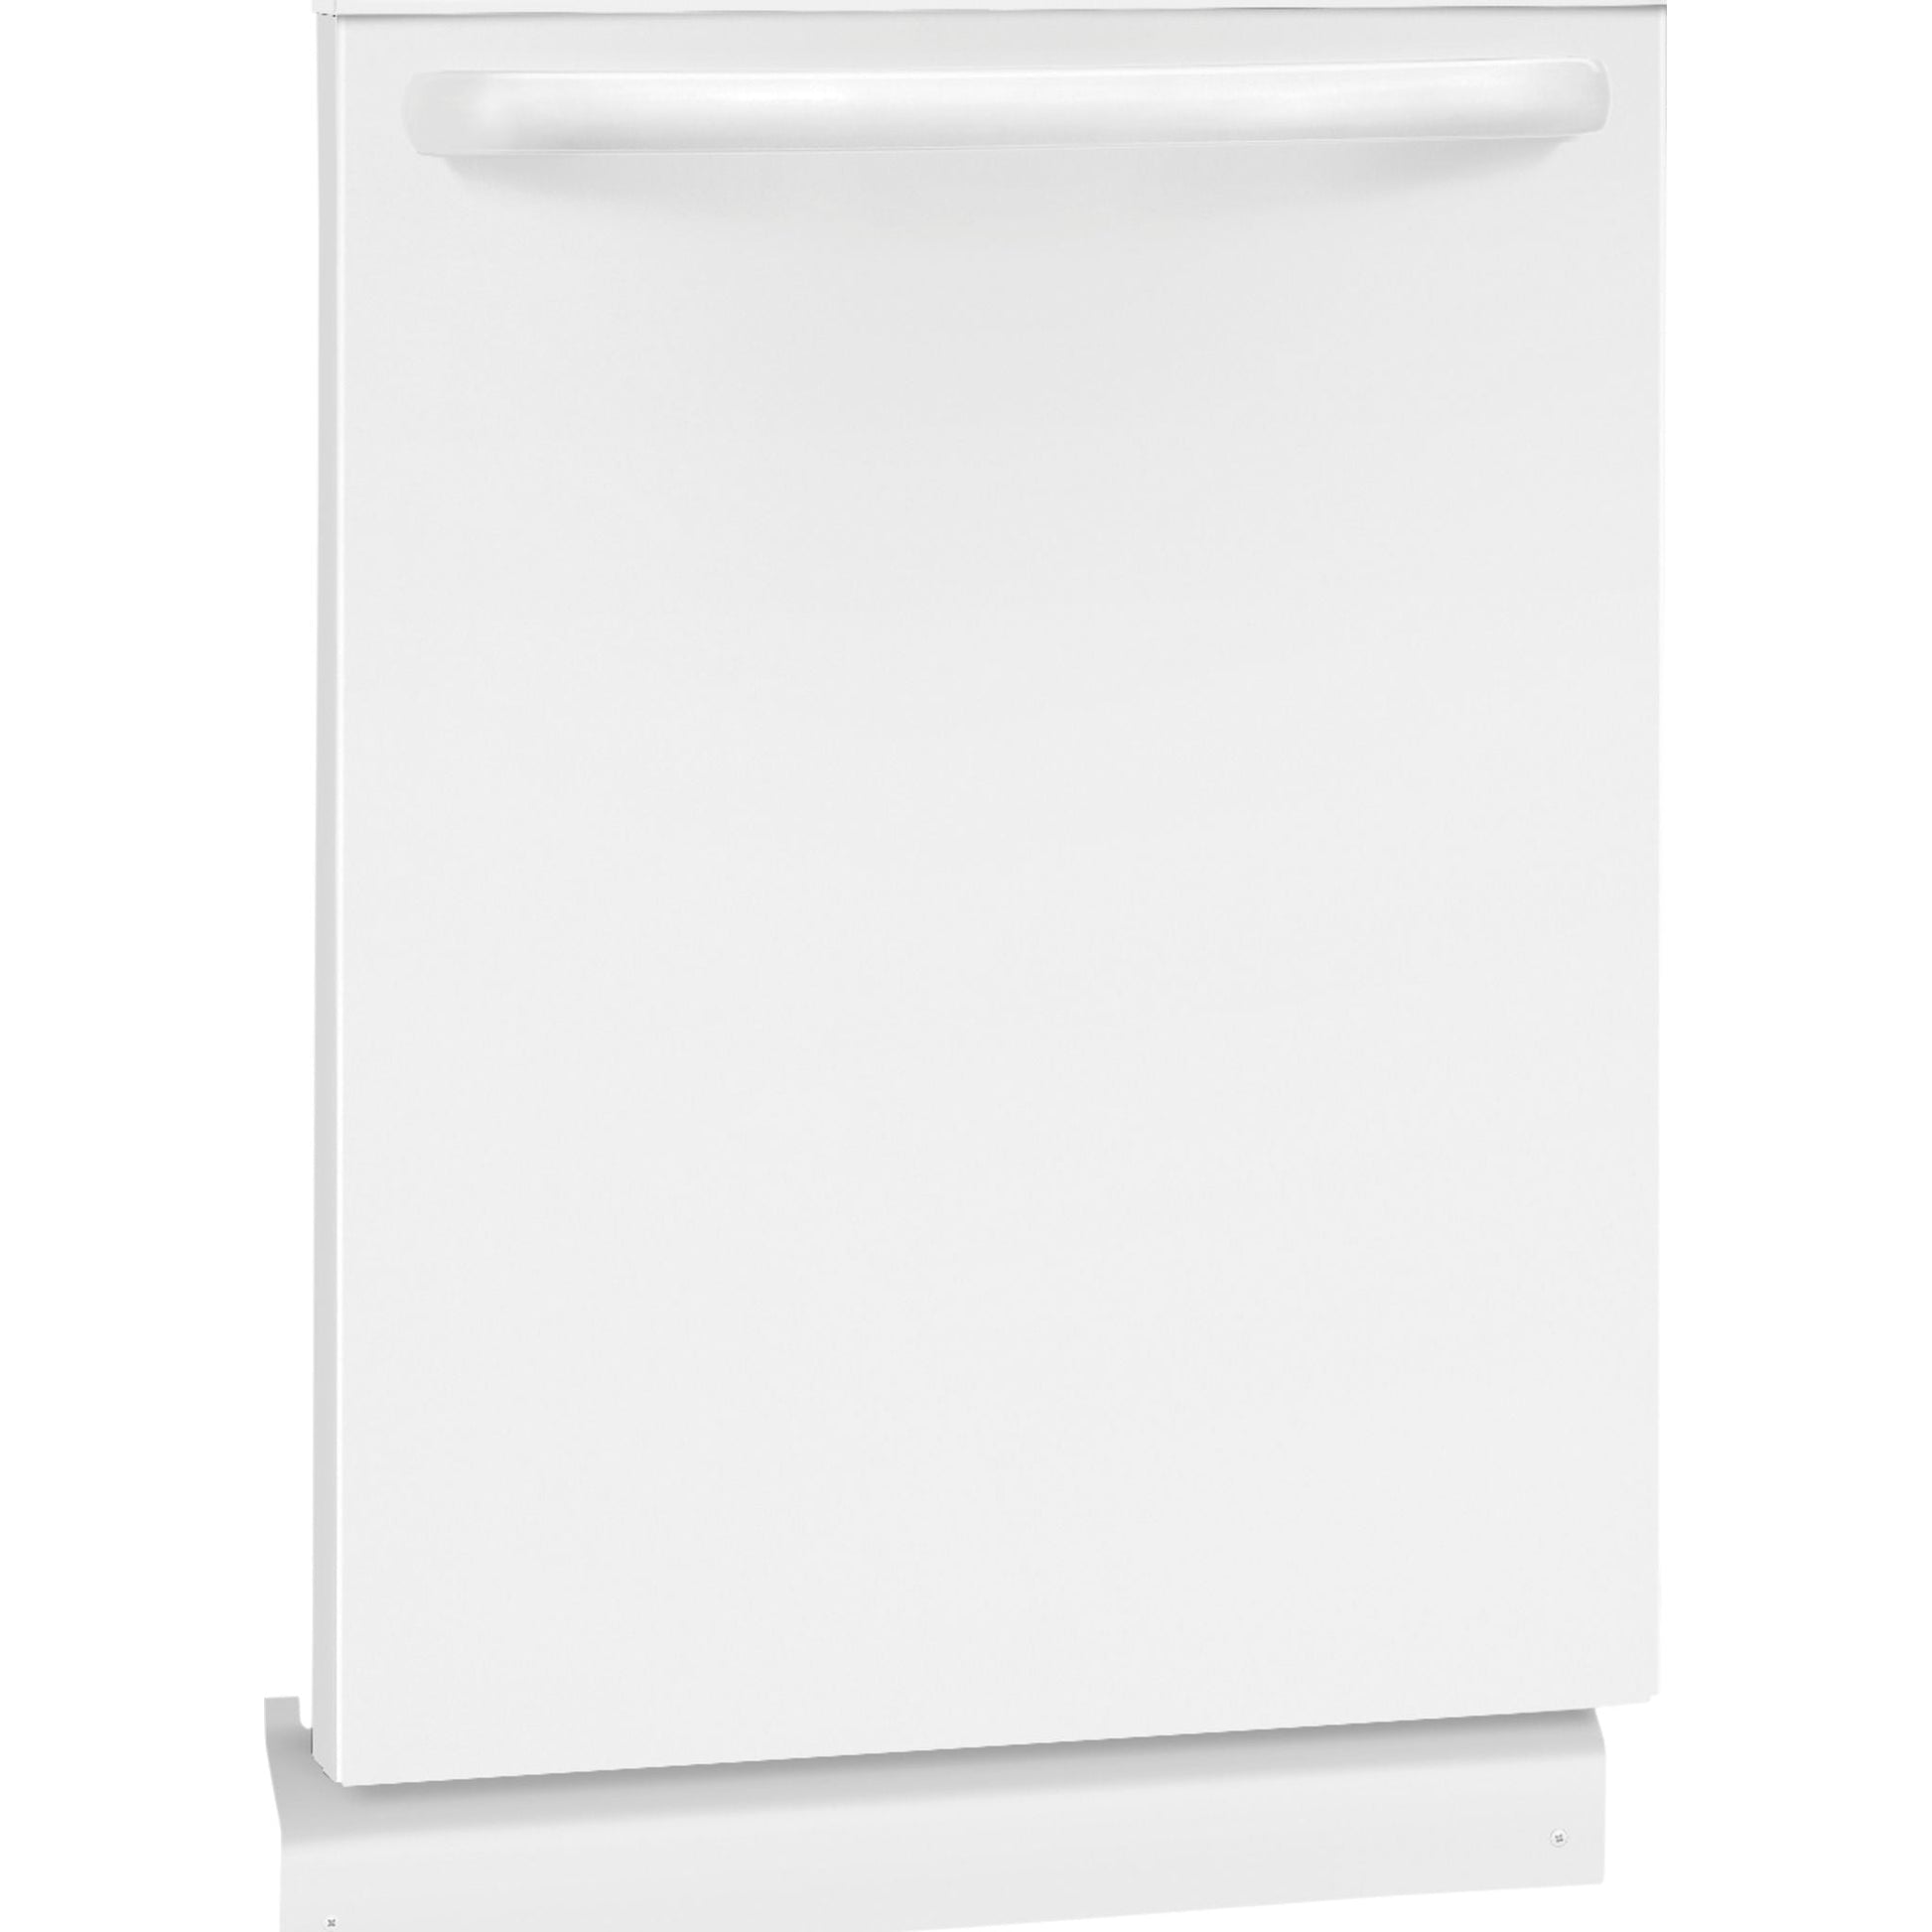 Frigidaire Dishwasher Plastic Tub (FFID2426TW) - White